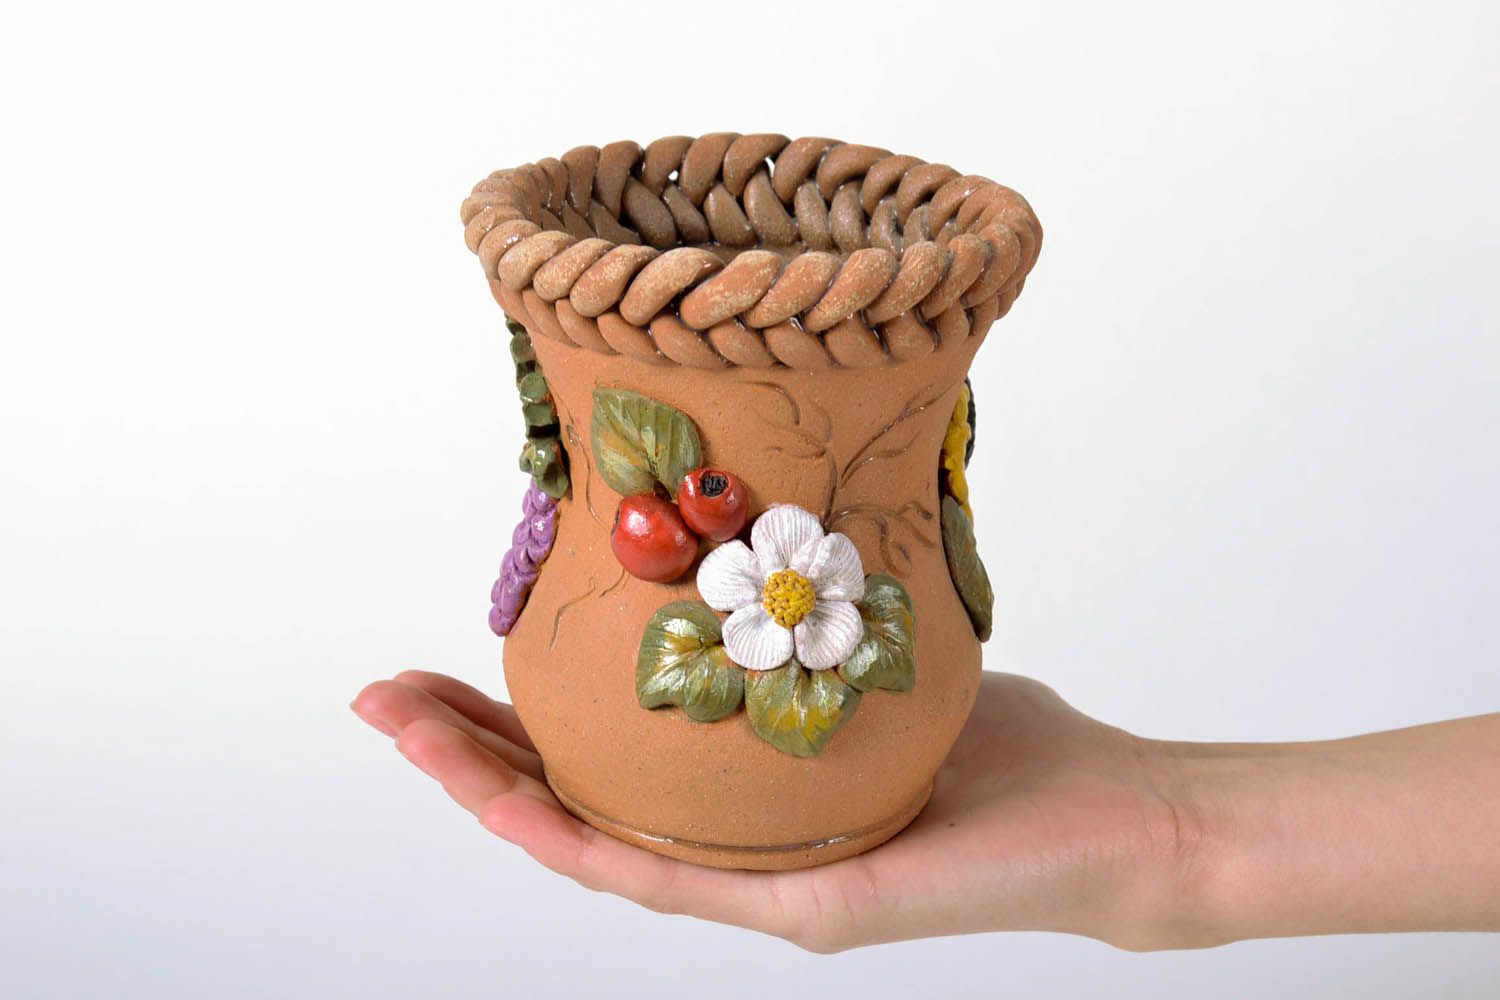 Vaso de cerâmica para decoração feito de barro e pintado com tintas acrílicas foto 5